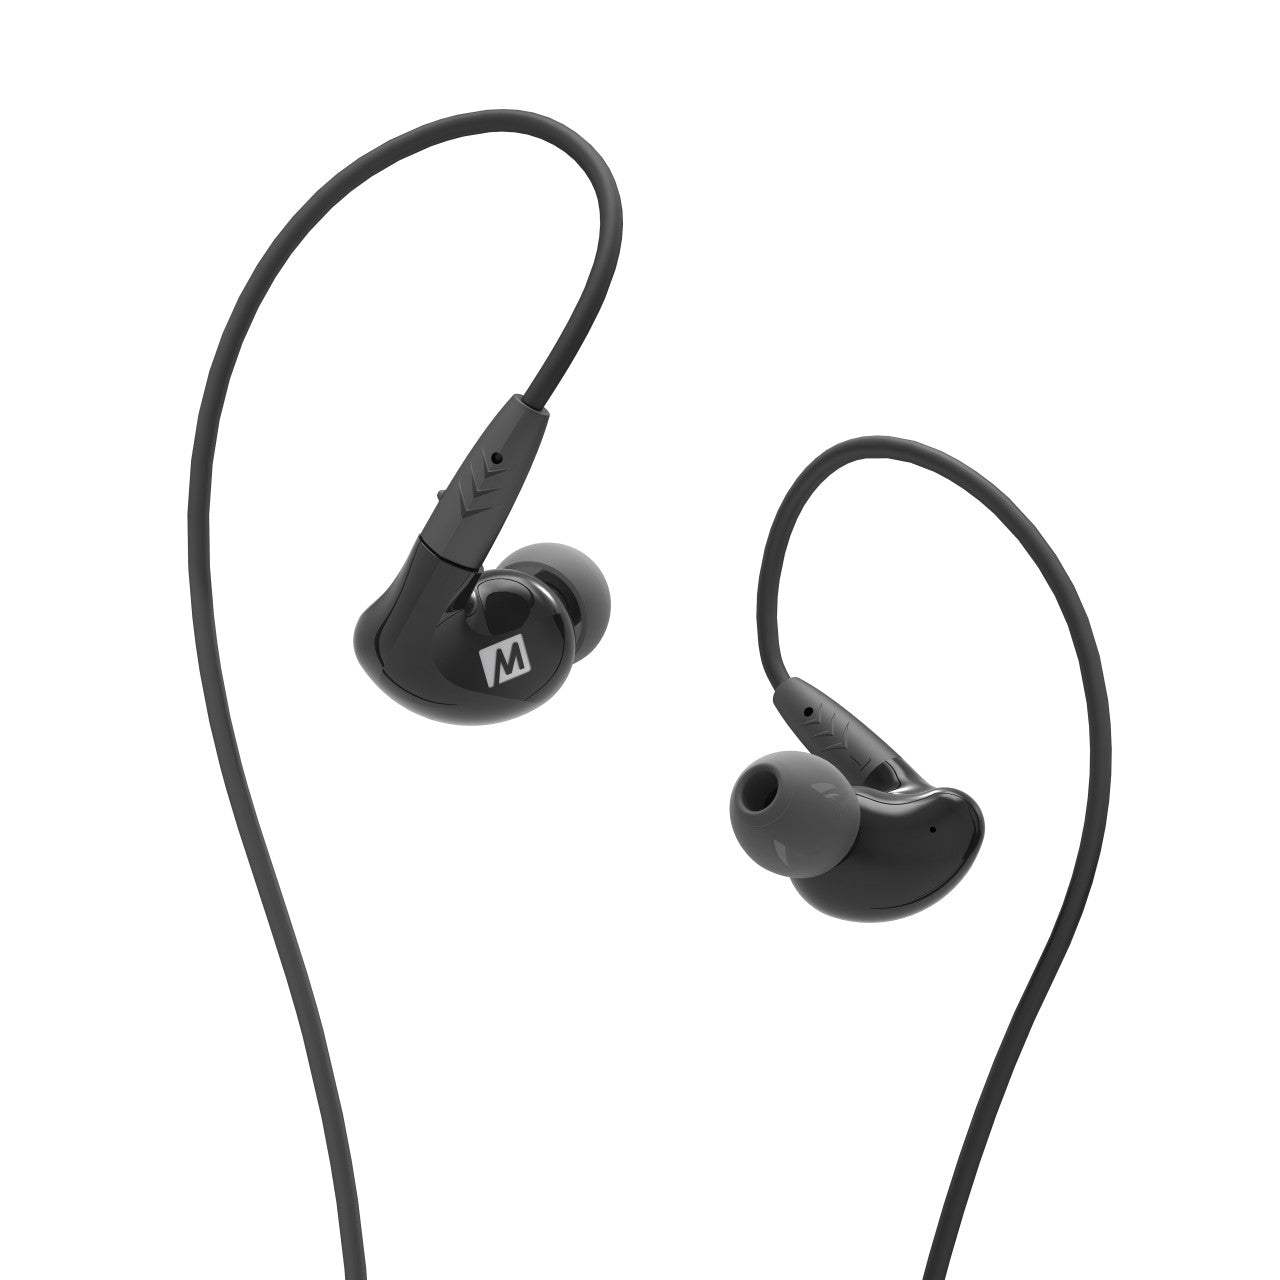 Image of Pinnacle P2 High Fidelity Audiophile In-Ear Headphones.